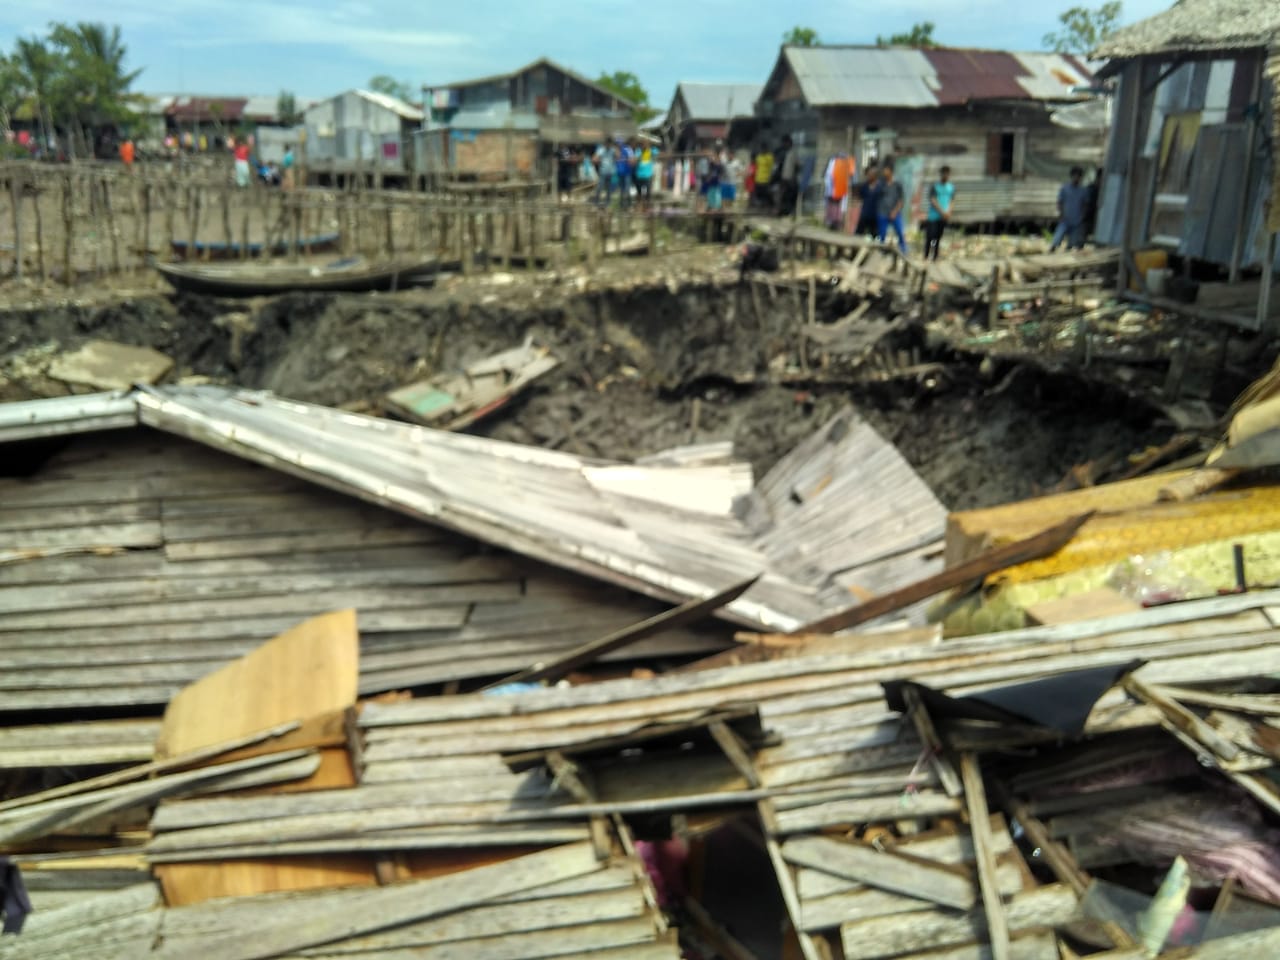 3 Unit Rumah Warga Desa Tanjung Baru Rusak Akibat Longsor